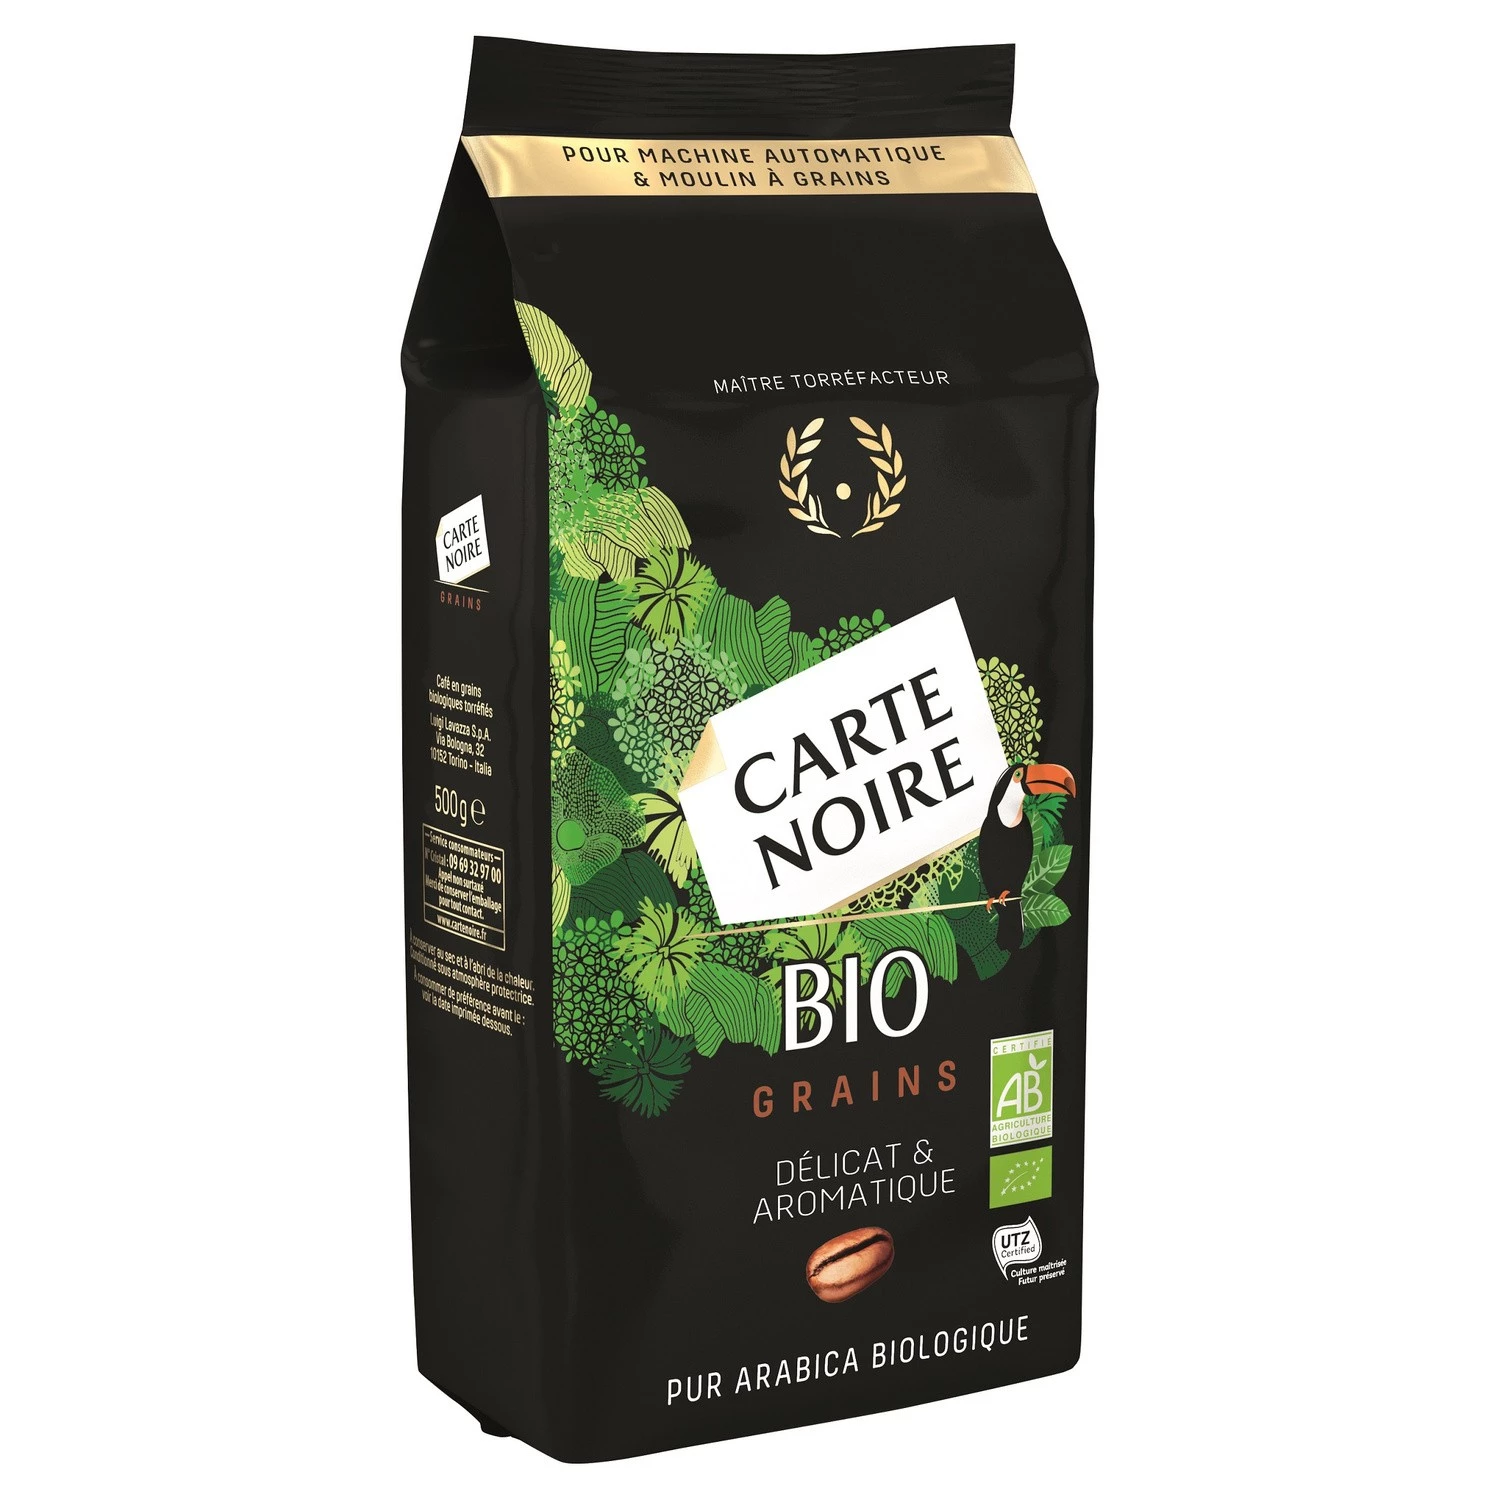 Grãos de café orgânico delicados e aromáticos 500g - CARTE NOIRE